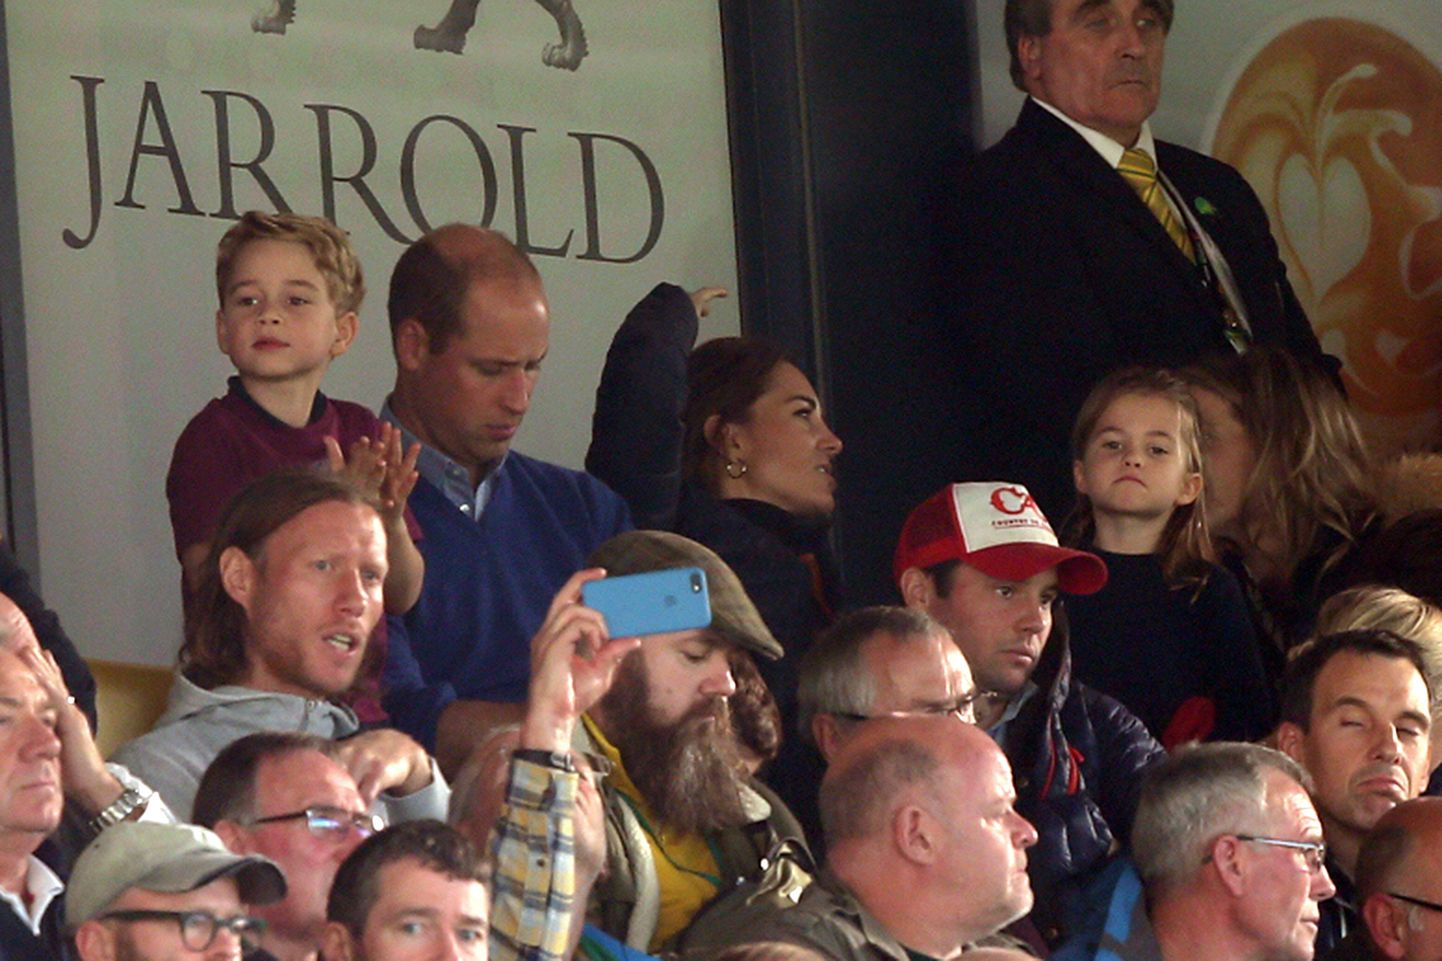 Norwich City v Aston Villa Premier. Prints William ja Kate Middleton viisid lapsed jalgpalli vaatama.